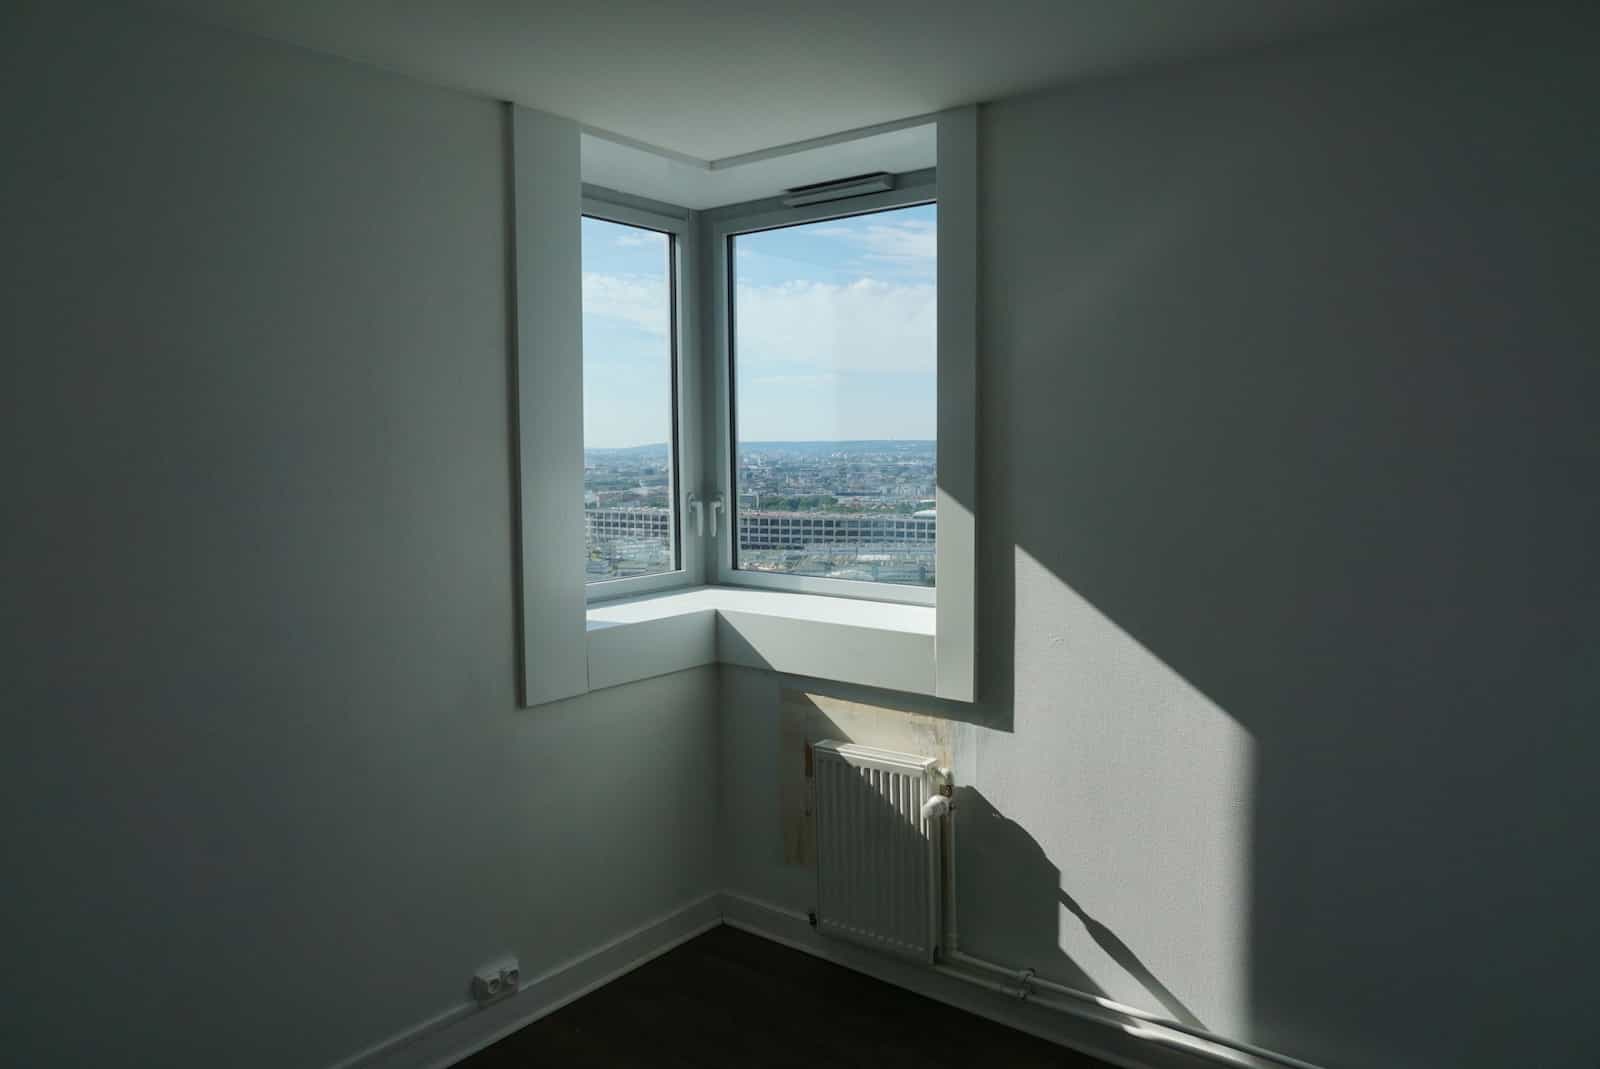 Een nieuw efficiënt raam- en verwarmingssysteem in Parijs